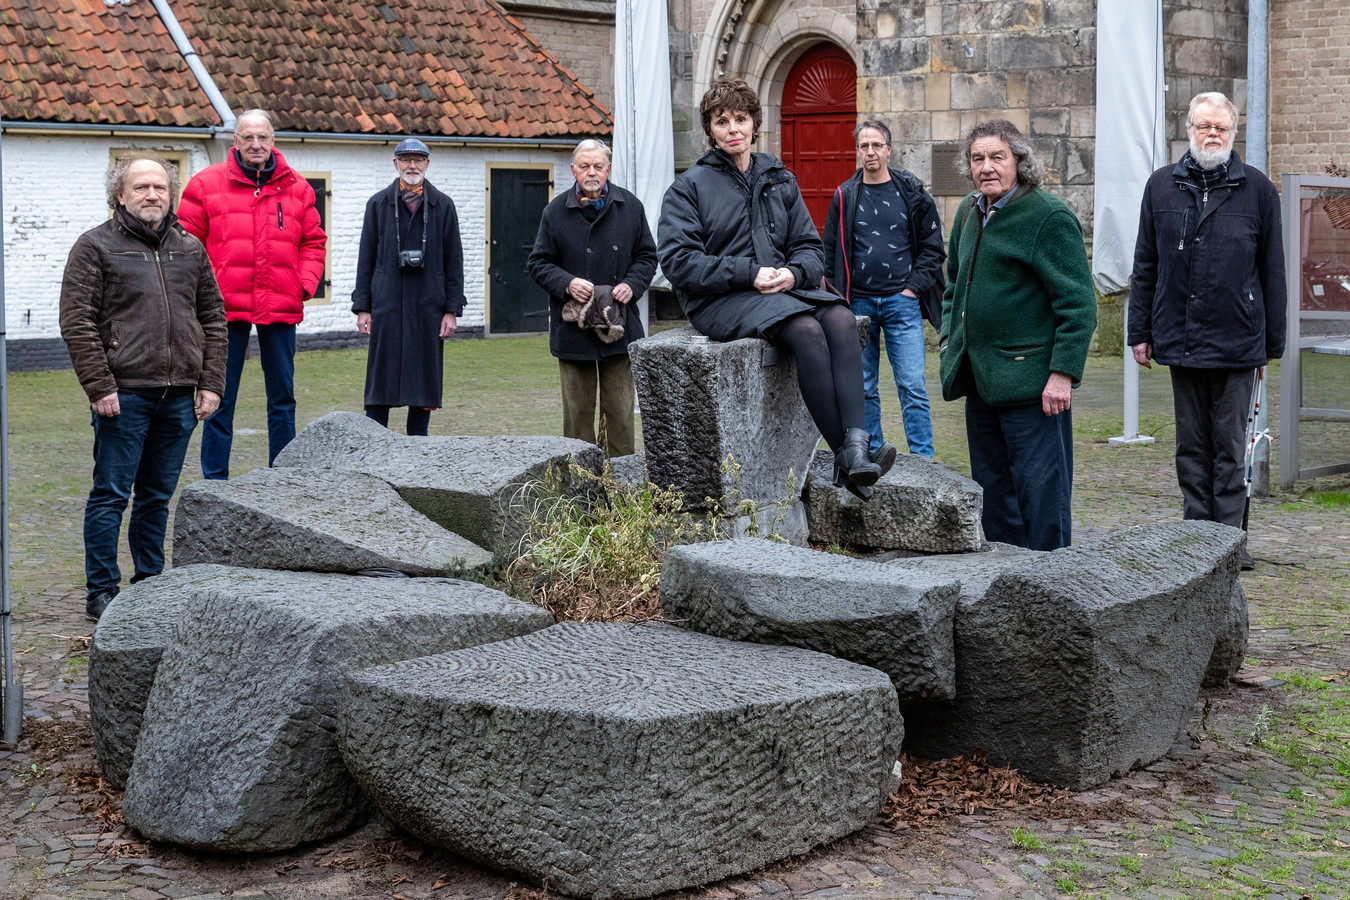 Tegenstanders van het weghalen van de fontein op het Grote Kerkhof verenigden zich vorige week vrijdag in de hoop tot een gesprek met de gemeente te komen. Het eerste gesprek vond donderdag plaats.